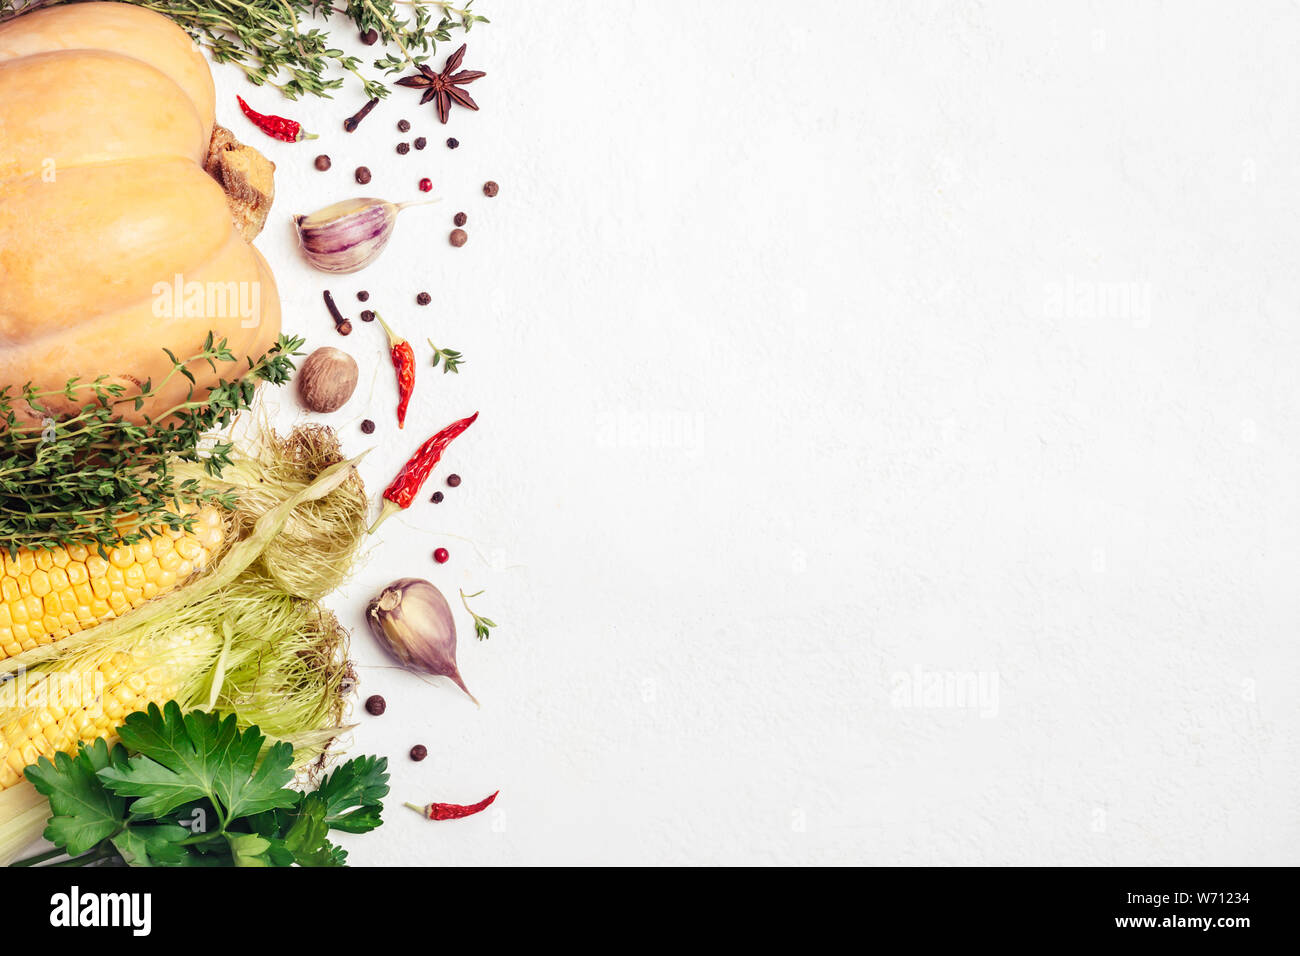 Herbst Gemüse und Gewürze auf weißem Hintergrund. Gesunde und vegetarische Ernährung Zutaten. Stockfoto